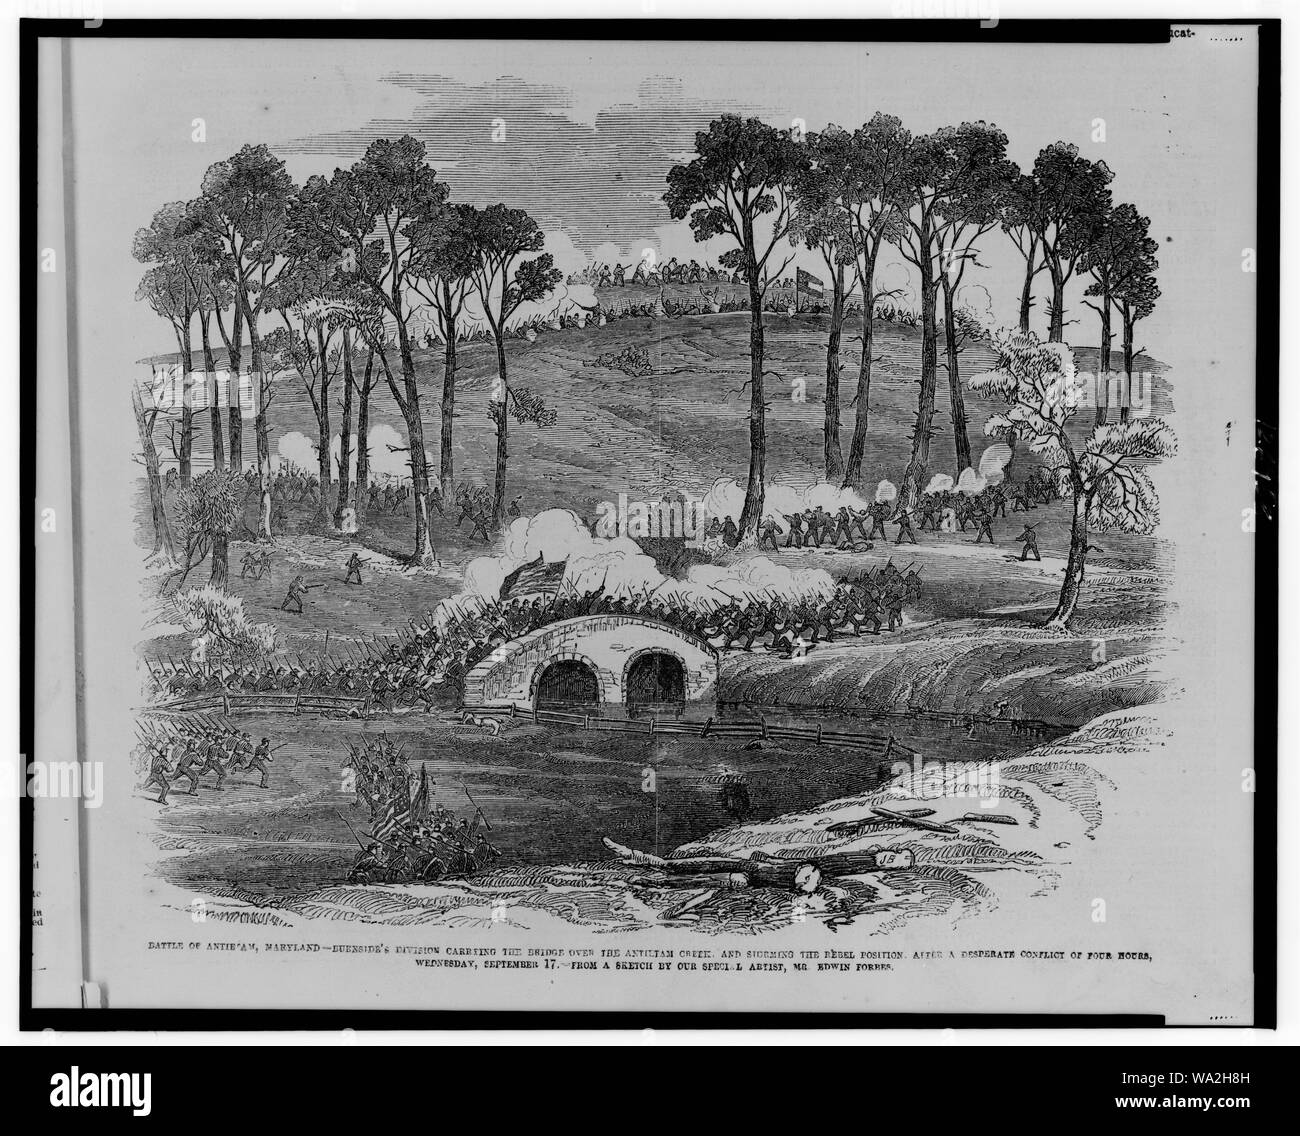 Schlacht von Antietam, Maryland - - der Burnside Division, die die Brücke über den Antietam Creek und Erstürmung der Rebel Position, nach einem verzweifelten Konflikt von vier Stunden, Mittwoch, 17. September/aus einer Skizze durch unsere spezielle Künstler, Herr Edwin Forbes. Stockfoto